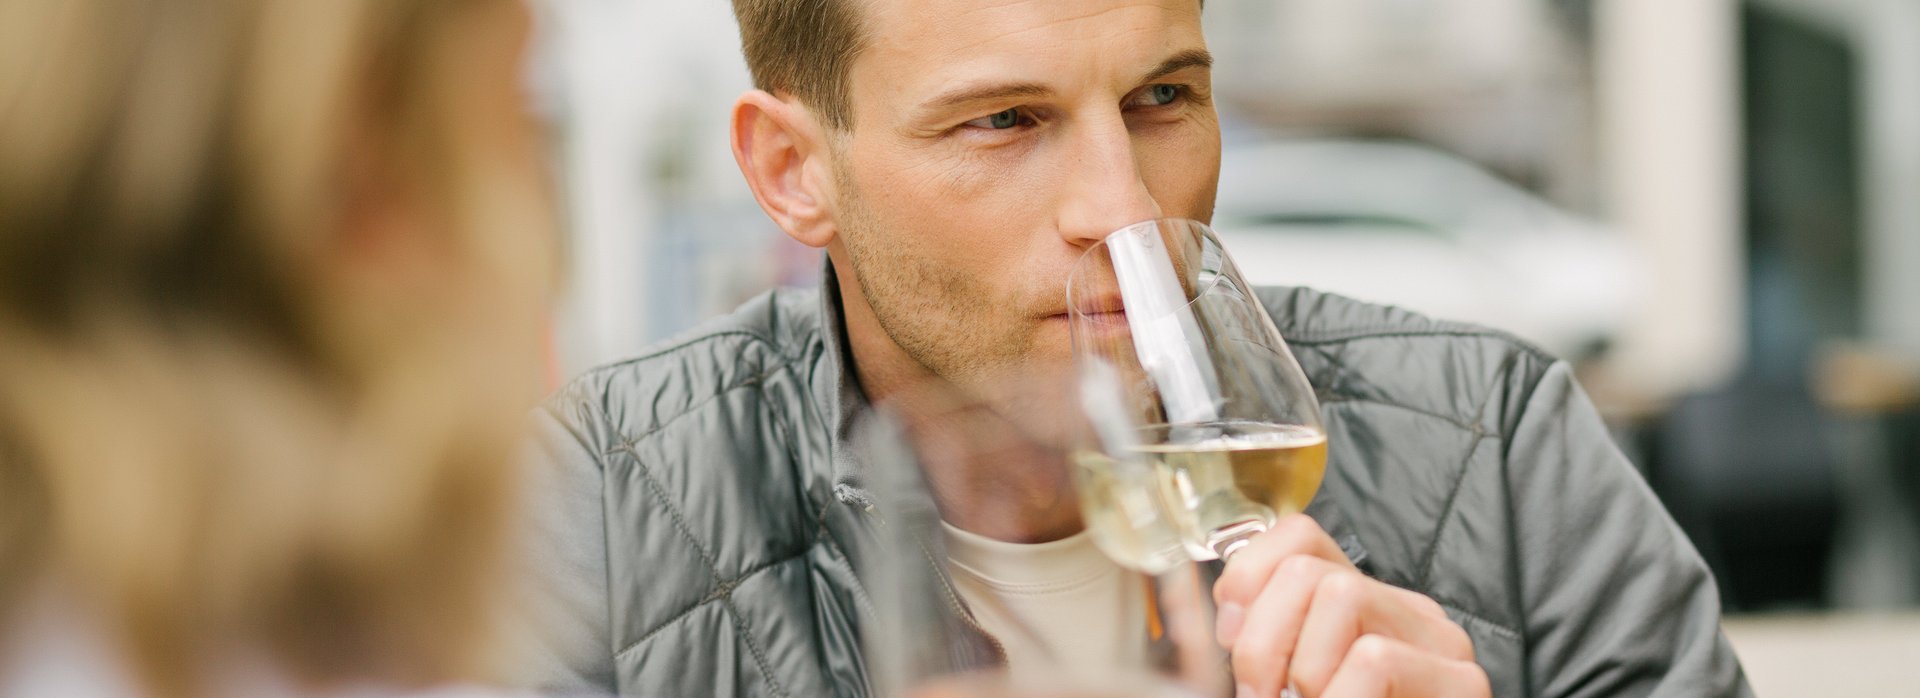 Mann genießt ein Glas Wein